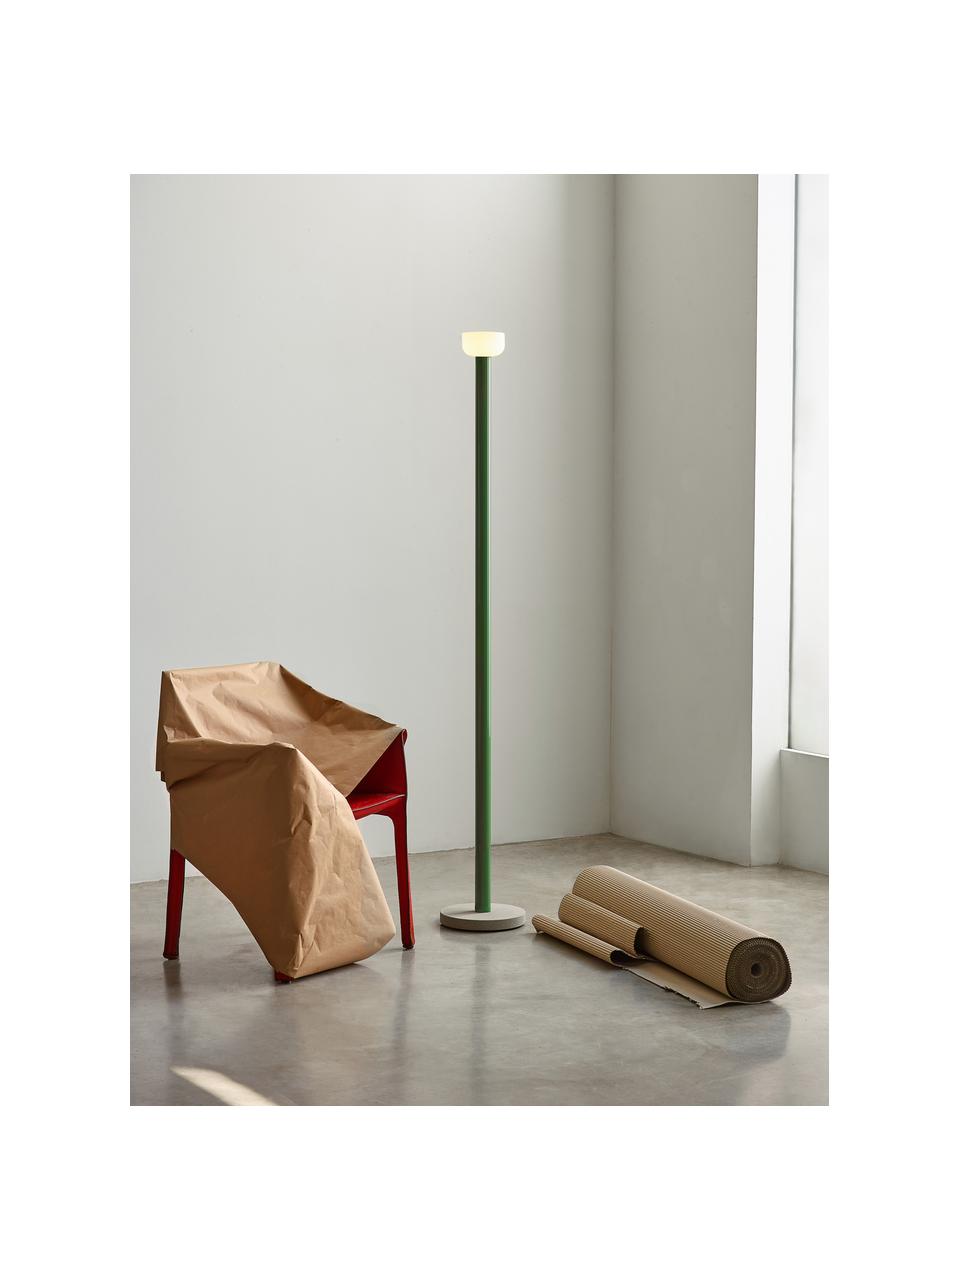 Lámpara de pie grande LED regulable Bellhop, Pantalla: vidrio, Estructura: aluminio recubierto, Cable: plástico, Verde, Al 178 cm